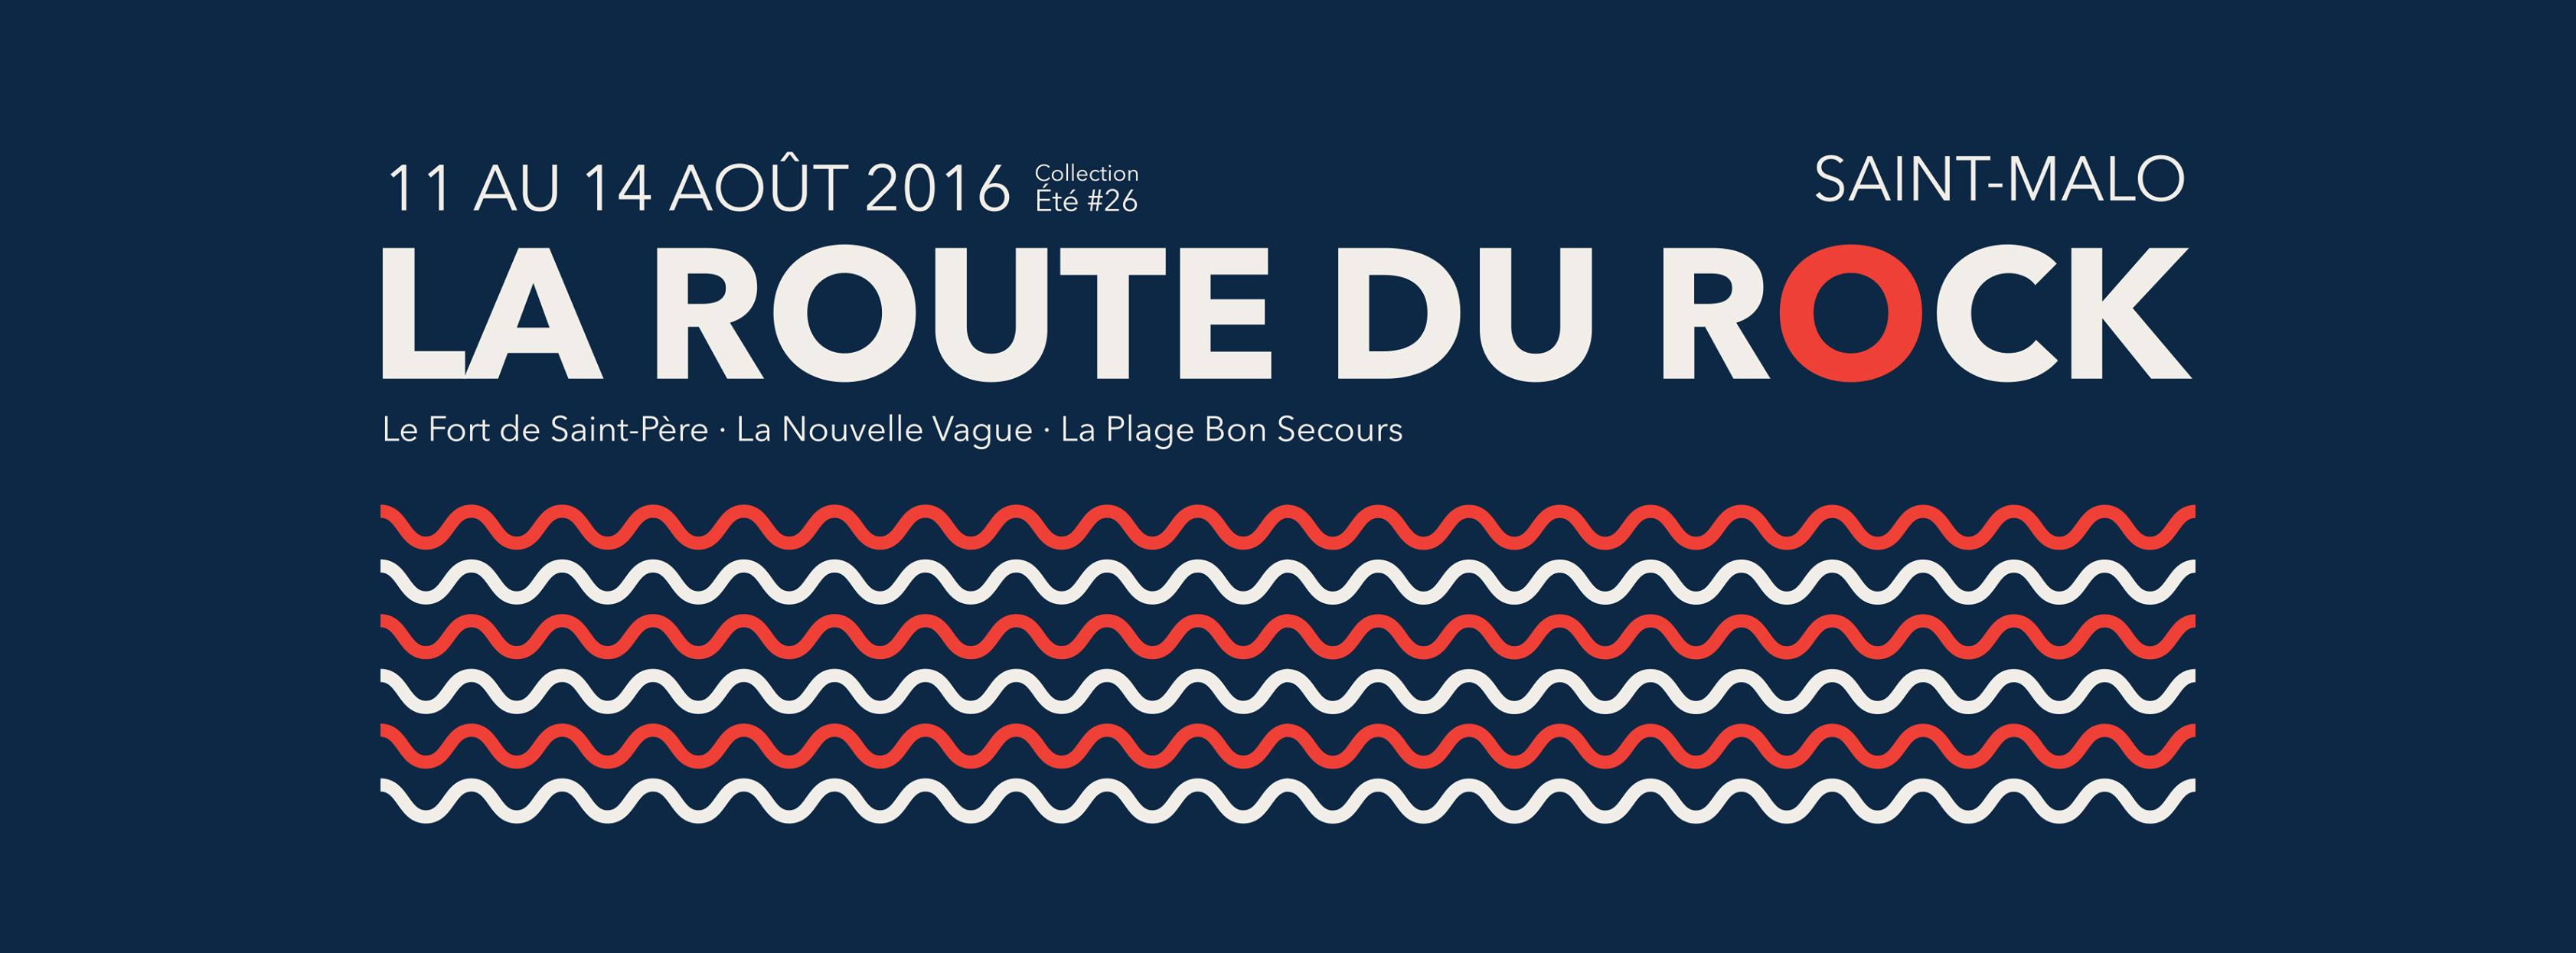 Affiche La Route du Rock 2016